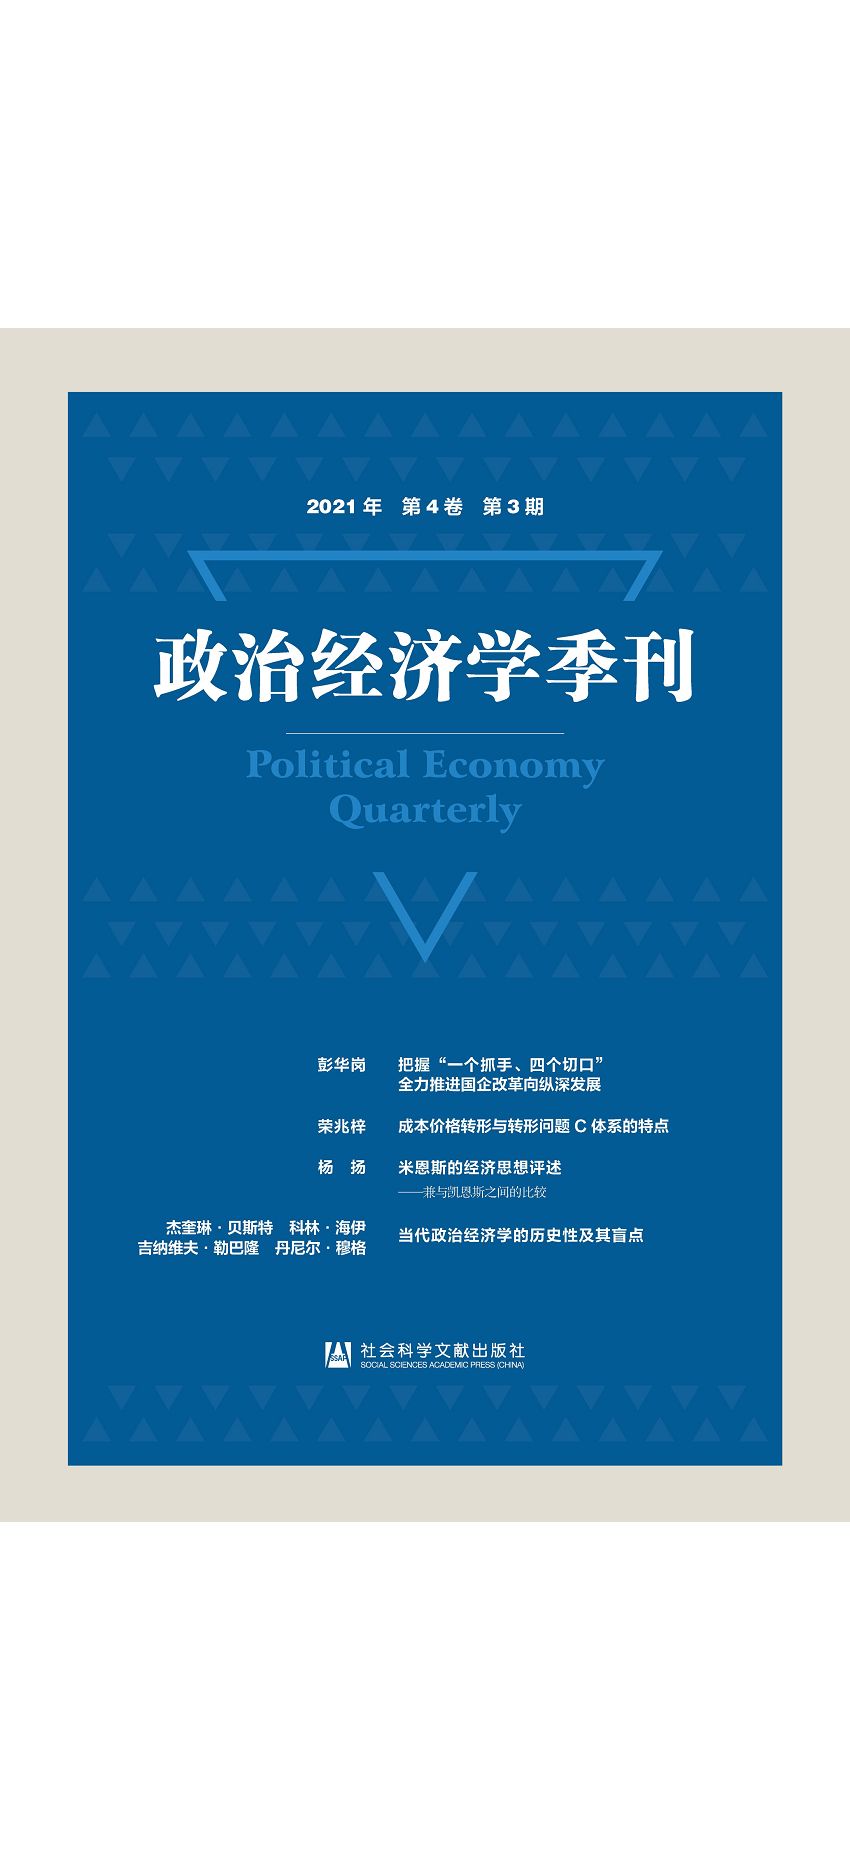 政治經濟學季刊(2021年第4卷第3期) 